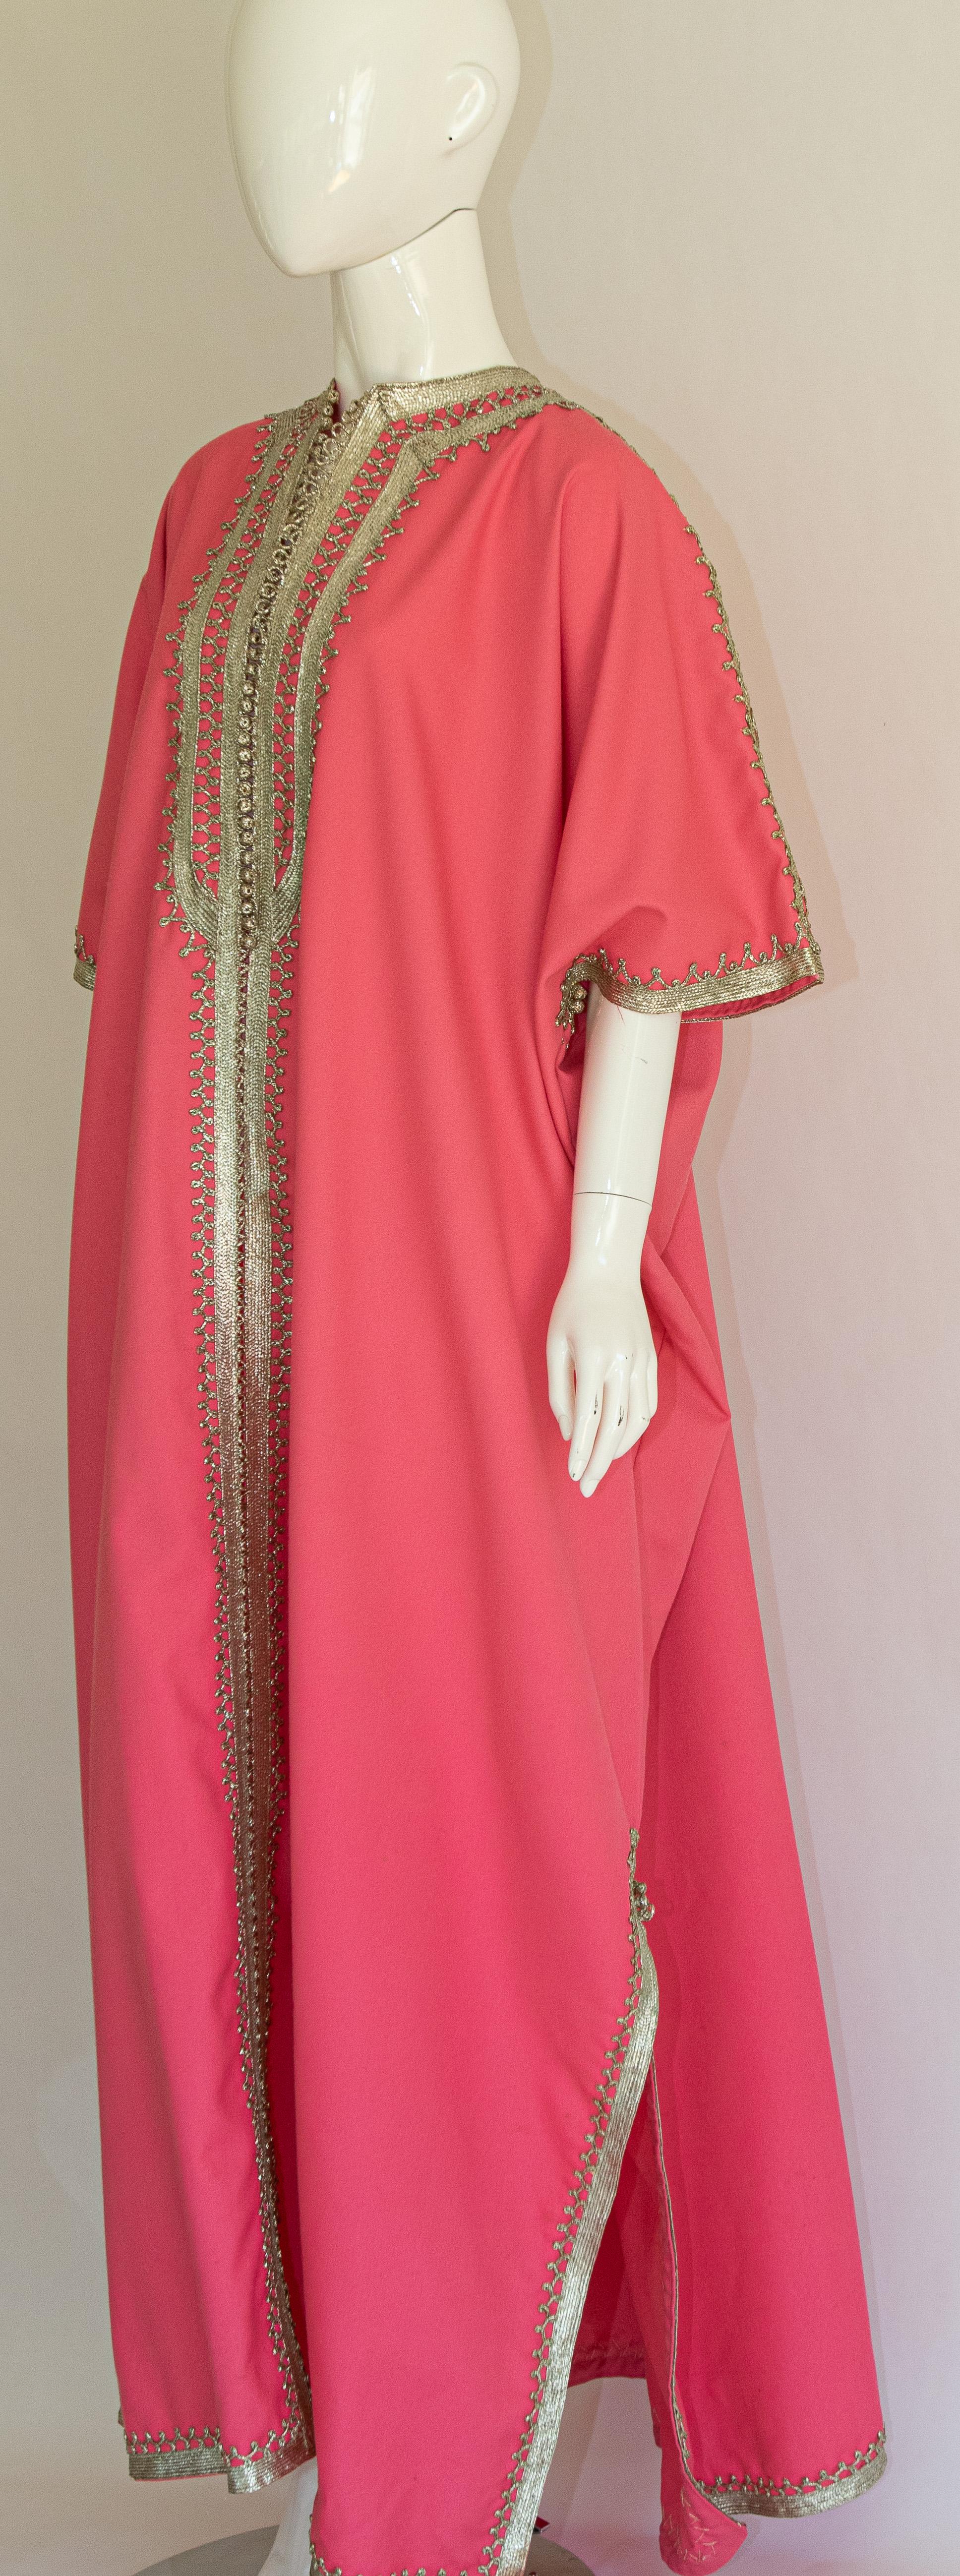 Moroccan Caftan Pink Color with Silver Trim, Vintage Kaftan circa 1970 For Sale 4